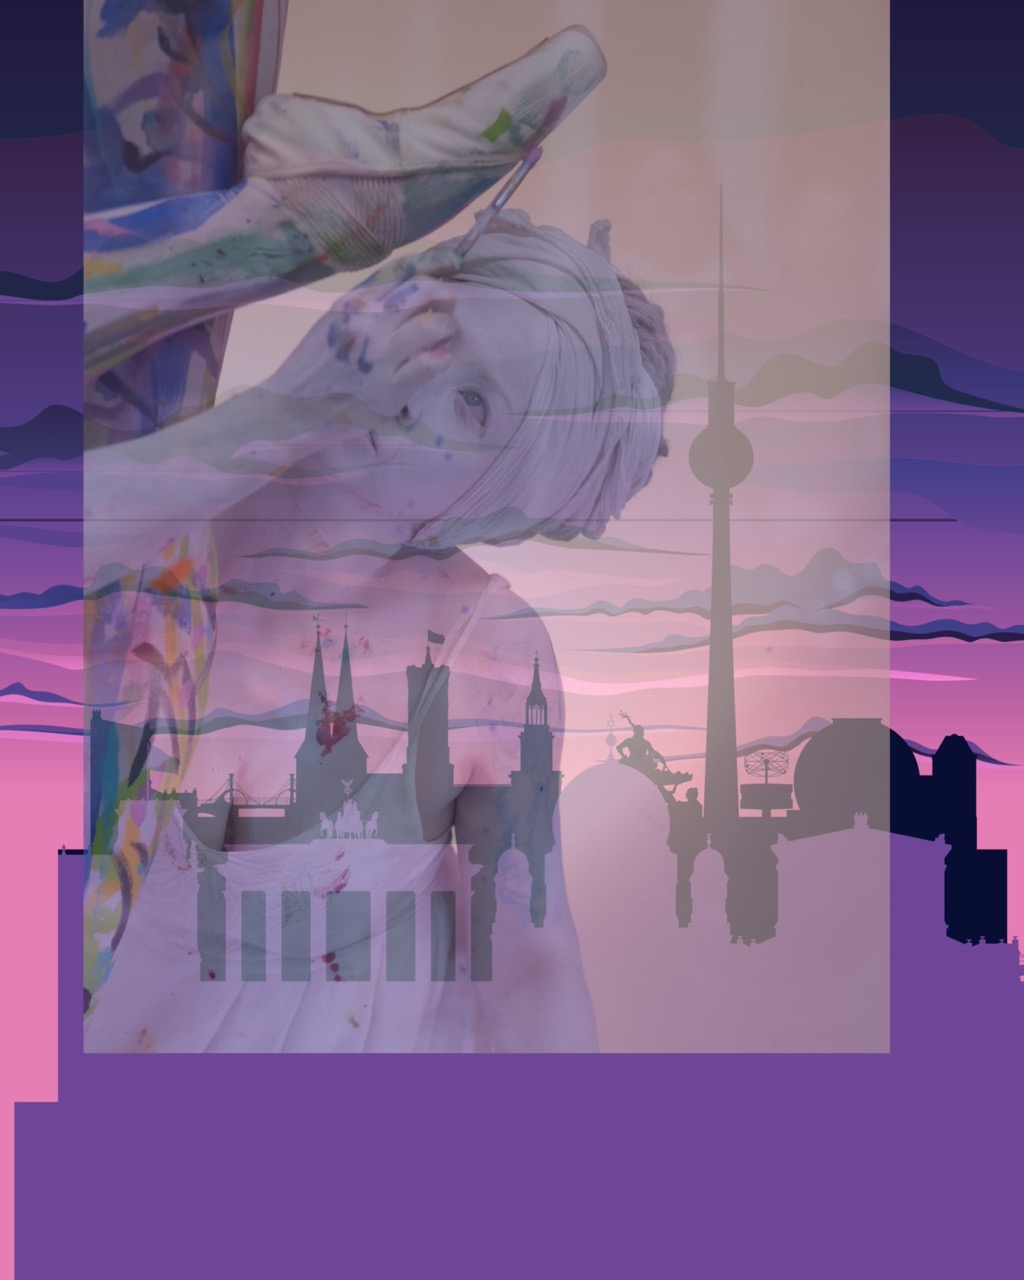 Transparente Darstellung einer Person in Ballettschuh, die einen Pinsel in der Hand hält und farbige Flecken auf dem Körper hat. Hinter und neben ihr ist eine Illustration des Umrisses bekannter deutscher Gebäude zu sehen. Das gesamte Bild ist farblich in lila Nuancen gehalten.